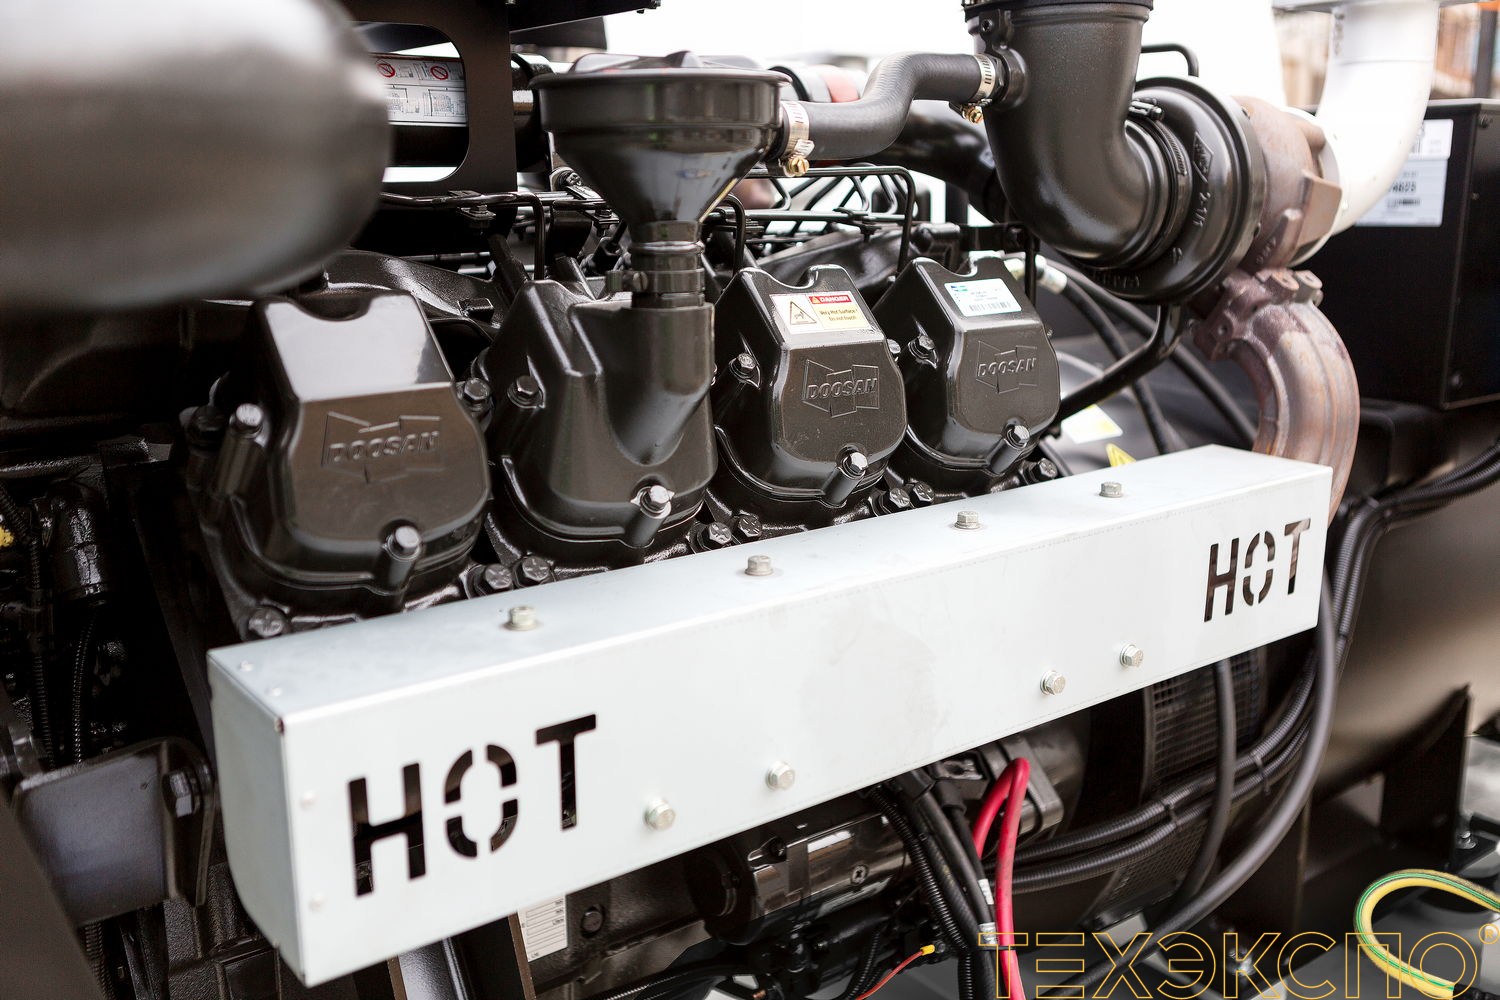 HERTZ HG450DL - ДЭС 324 кВт в Санкт-Петербурге за 6 477 902 рублей | Дизельная электростанция в Техэкспо